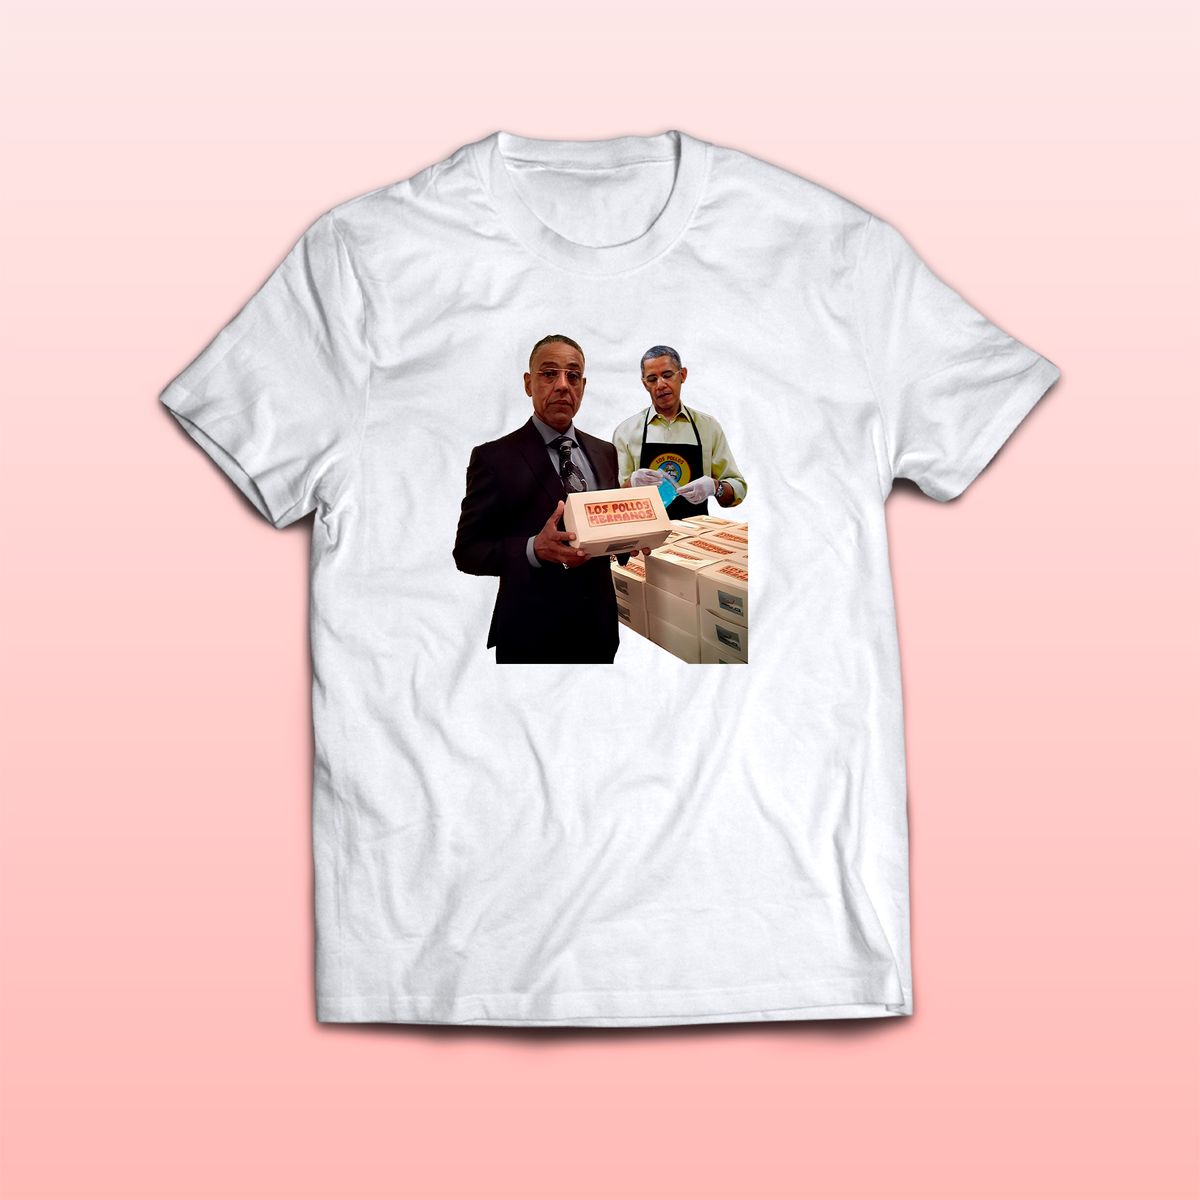 Nome do produto: Camiseta Los Pollos Hermanos Family Com Gus Fring e Barack Obama